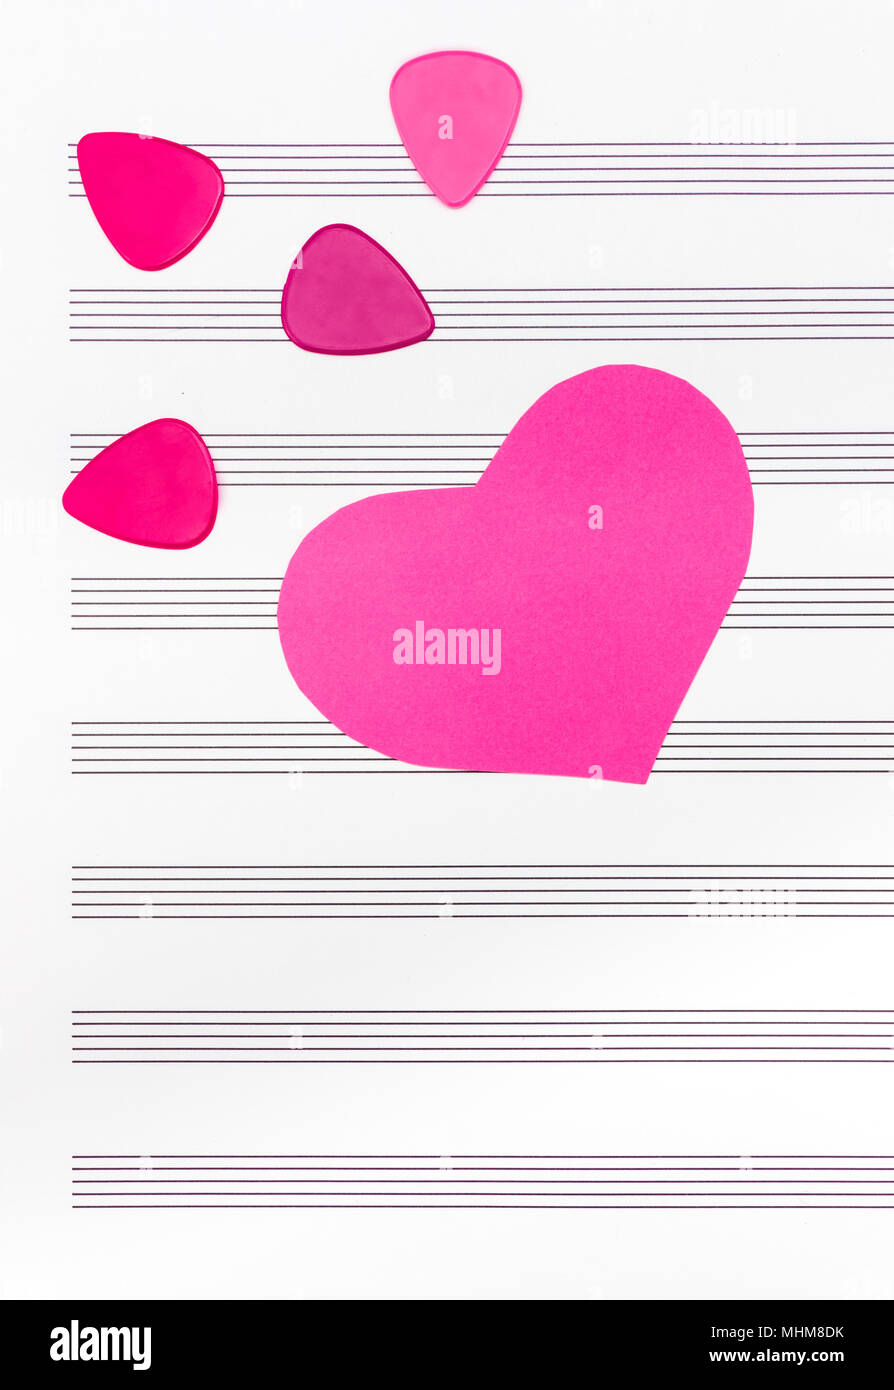 Rosa Herz und Plektren auf leeres Blatt Papier. Romantische Musik Konzept. Stockfoto